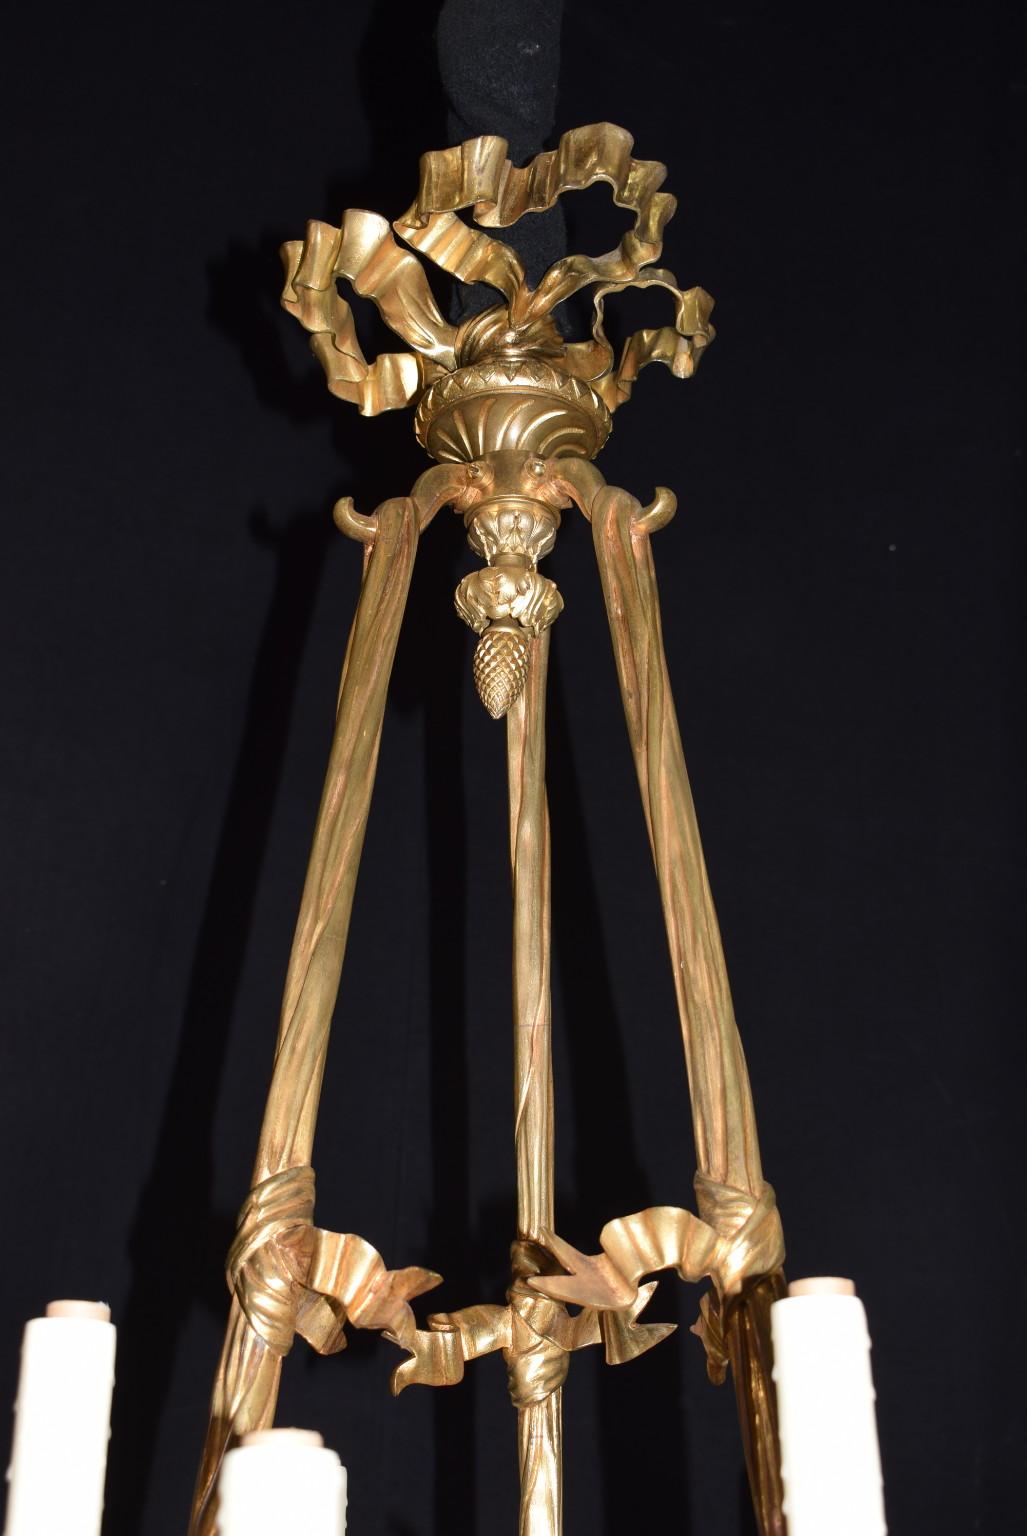 Vergoldeter und patinierter Bronze-Kronleuchter im Louis XVI-Stil, sehr feine Details.
CW4507